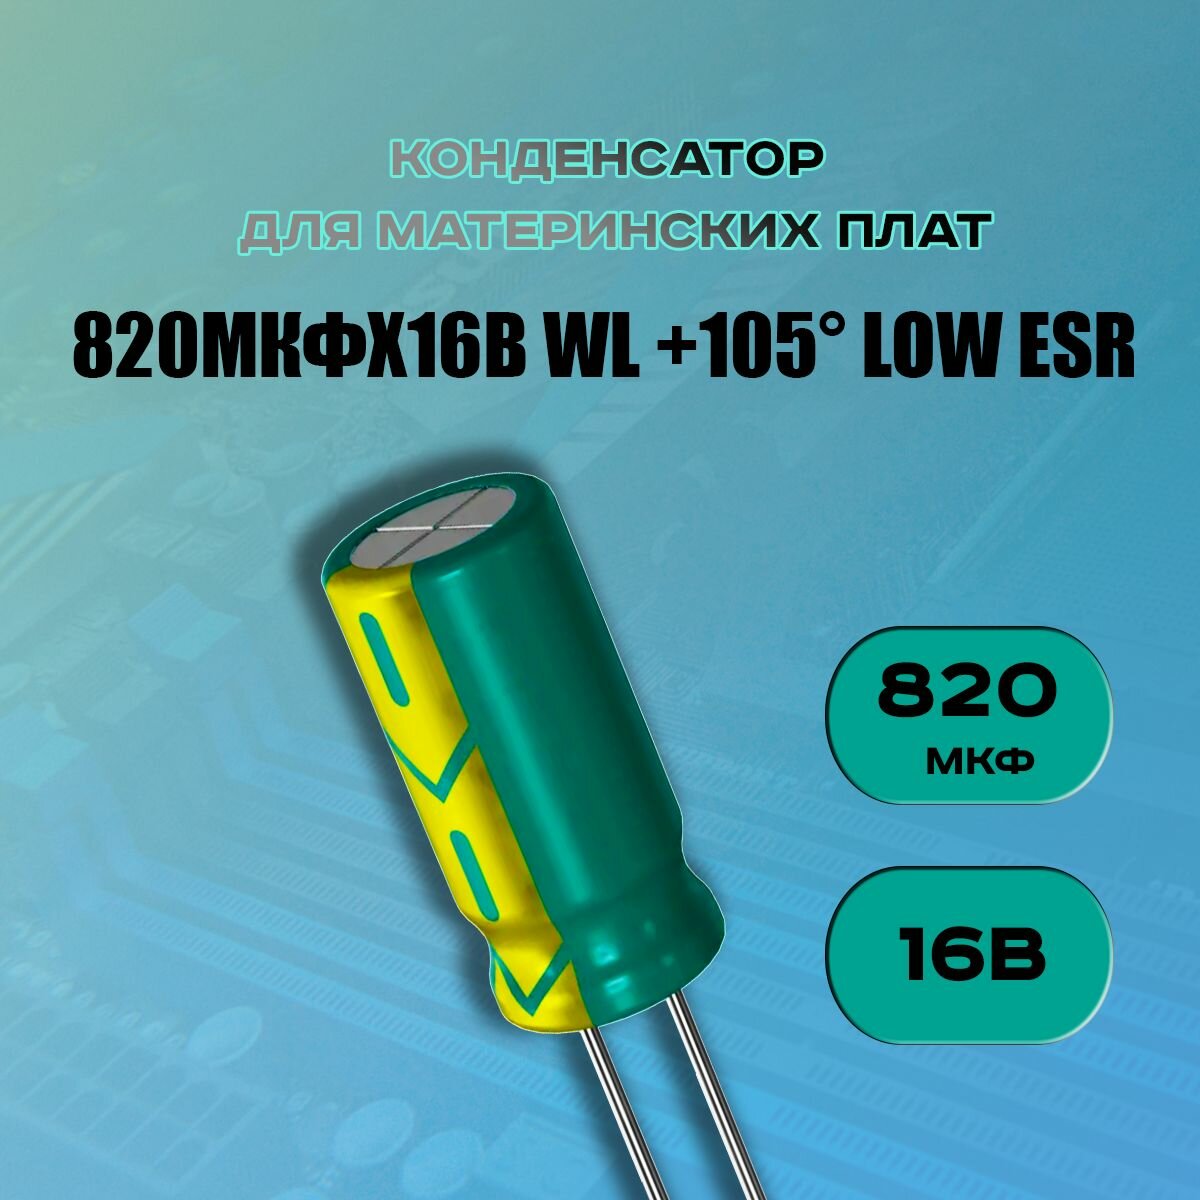 Конденсатор для материнской платы 820 микрофарат 16 Вольт (820uf 16V WL +105 LOW ESR) - 1 шт.